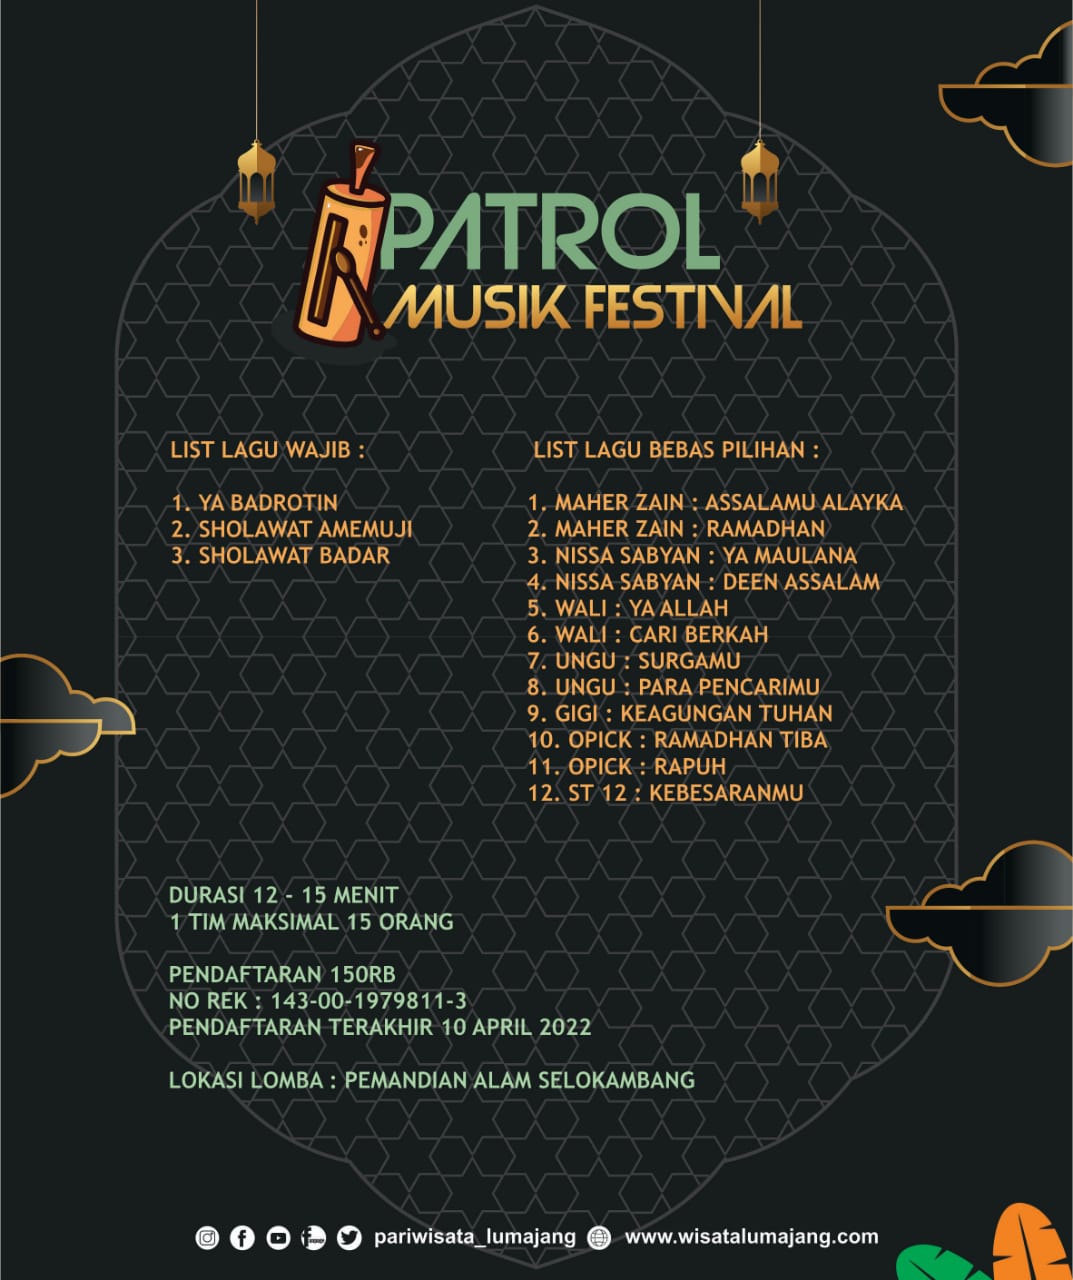 Patrol Musik Festival